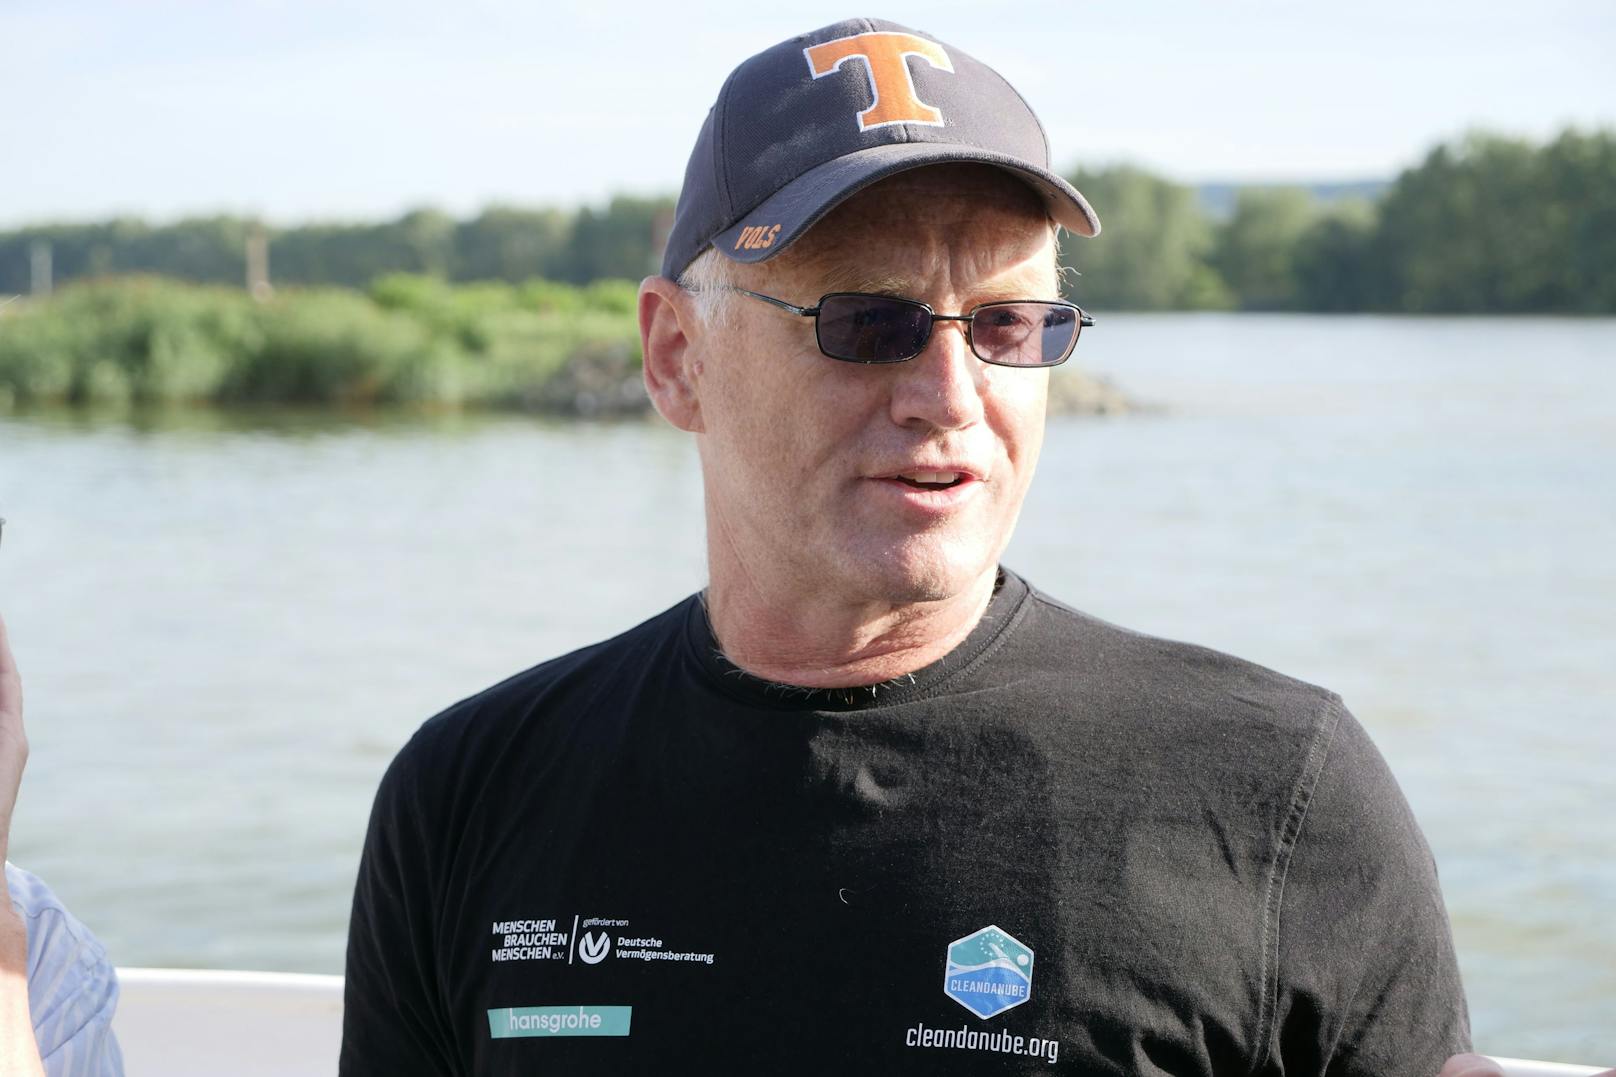 Ein Chemieprofessor schwimmt in der Donau gegen Plastikmüll an. Als Test-Runde für die geplante Durchschwimmung der Donau im April 2022 sprang Andreas Fath heute ins kühle Nass.